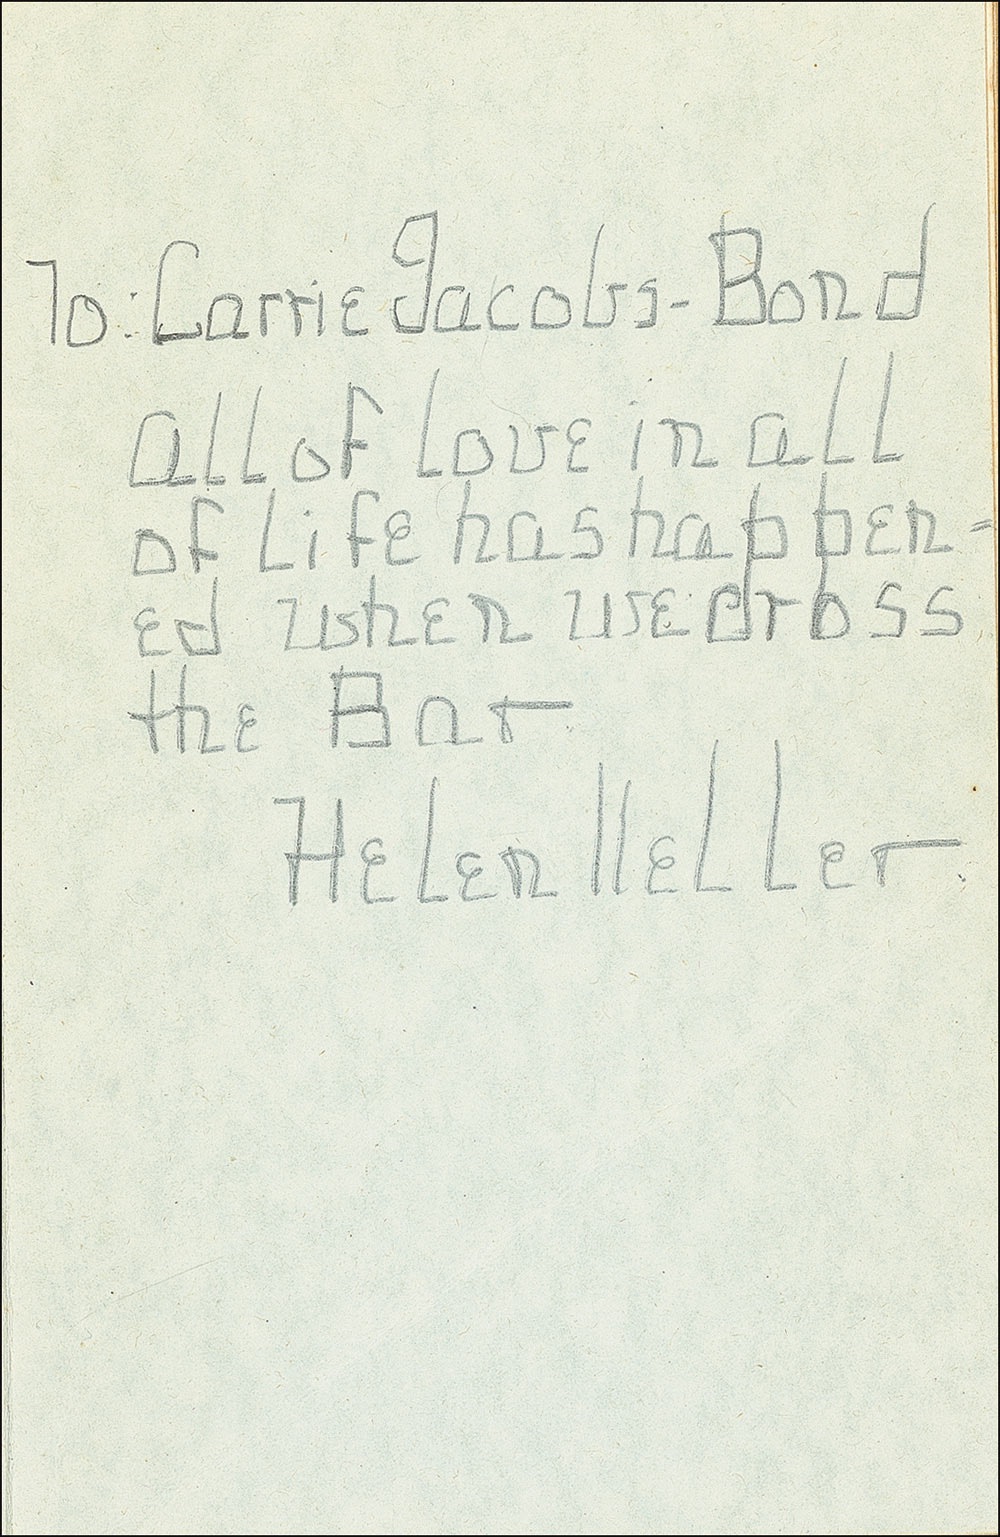 Lot #280 Helen Keller